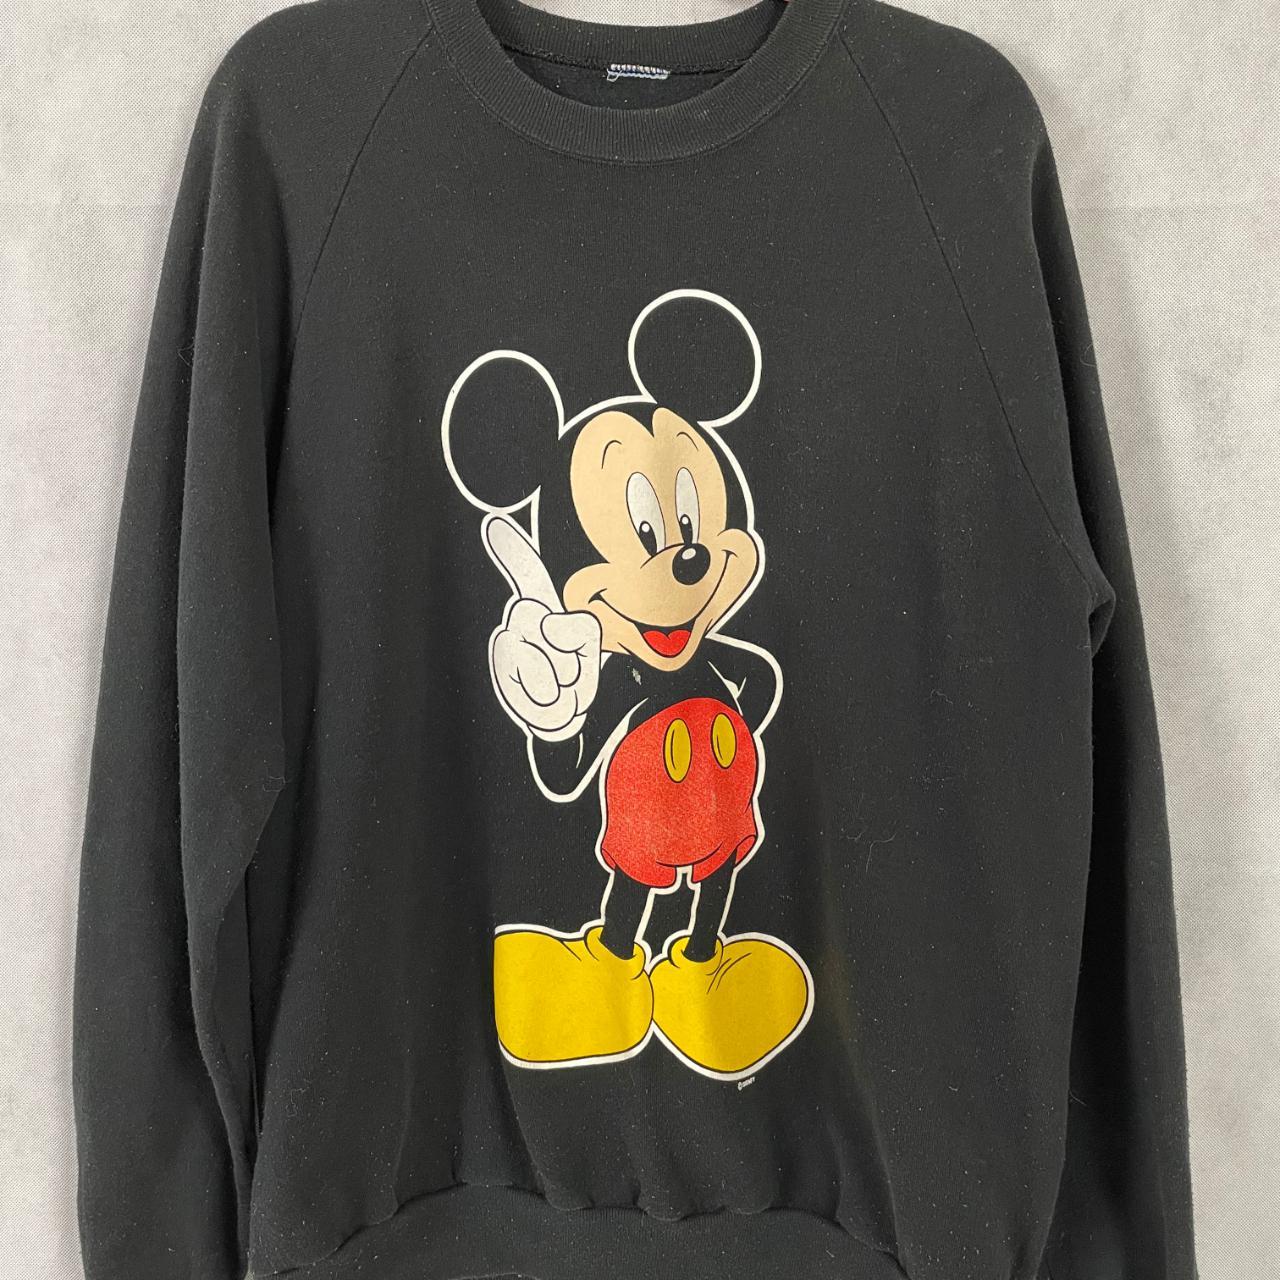 Vintage 80's Mickey Mouse Sweatshirt. I believe it... - Depop